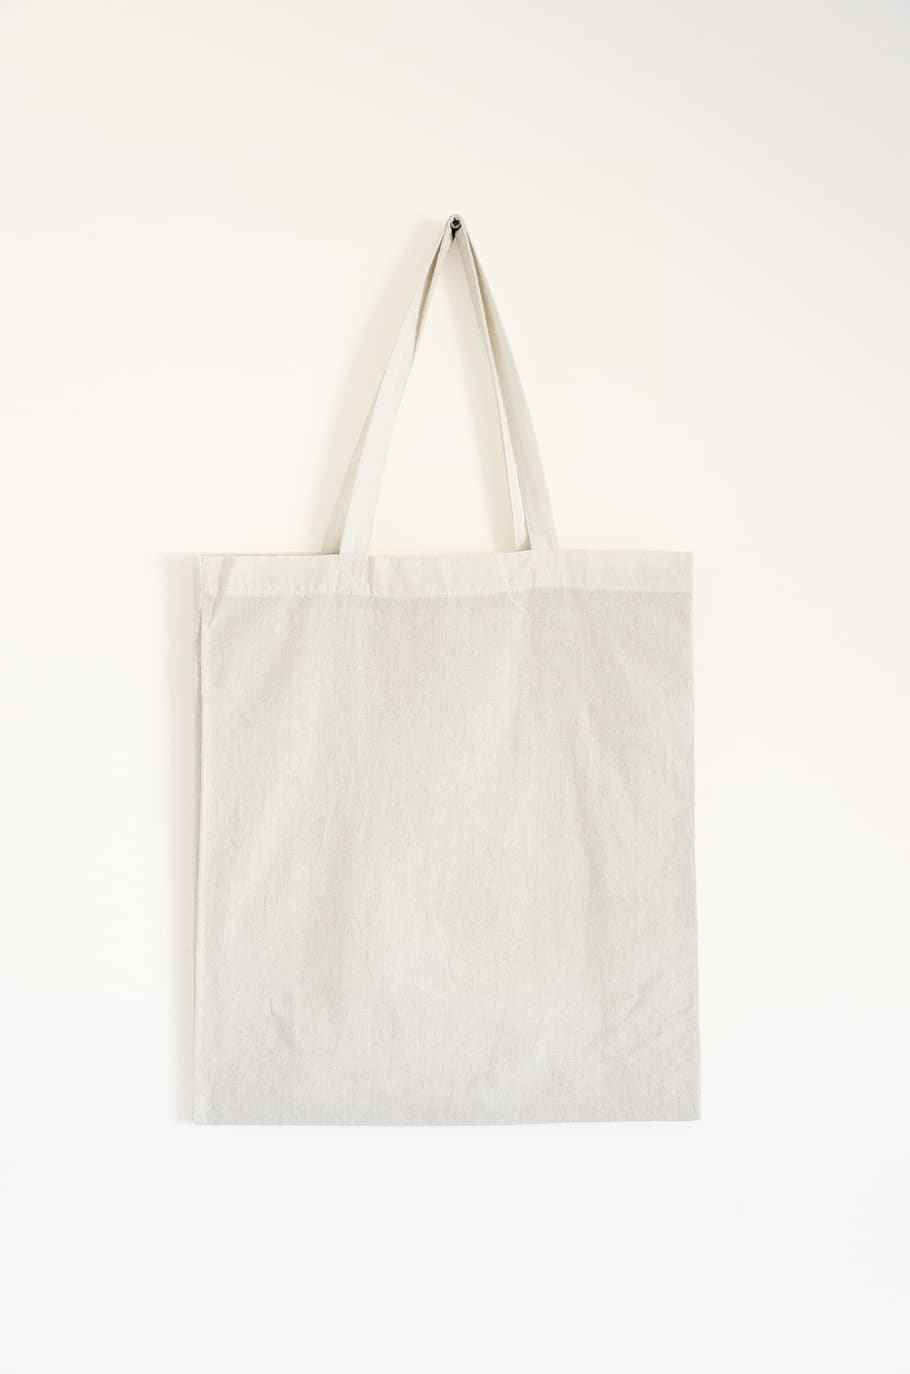 bolsa, algodão, bolsa de algodão, têxtil, parede, branco, em branco, modelo, recurso de design, plano de fundo